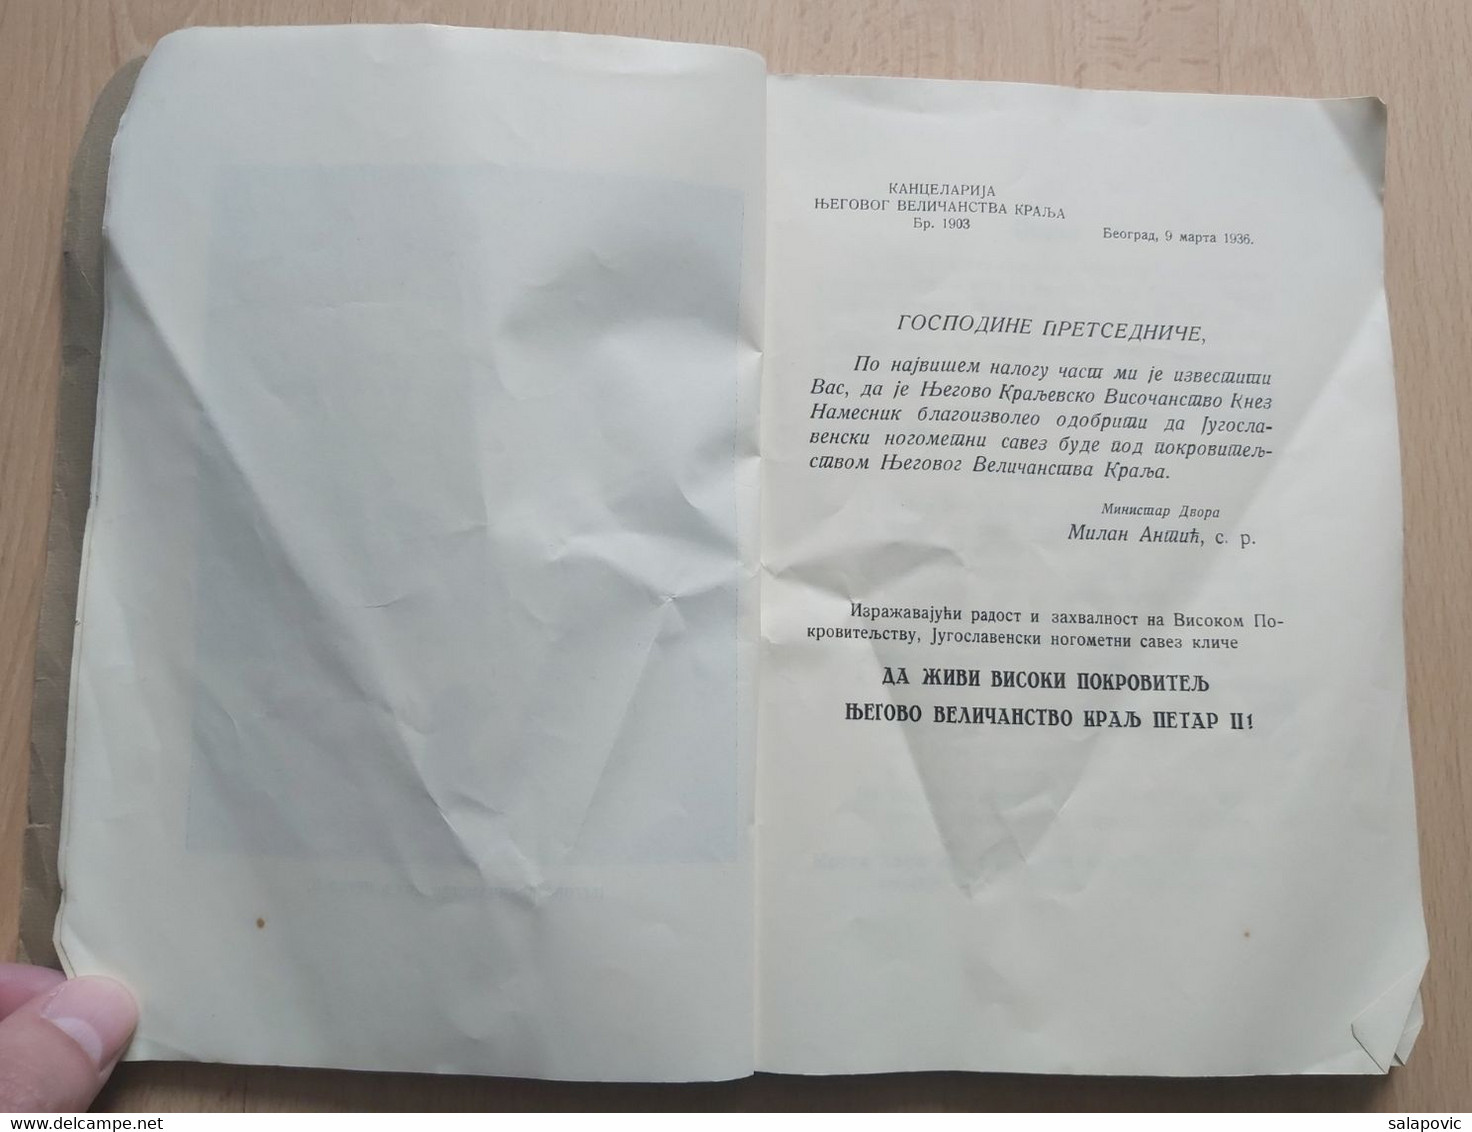 IZVJEŠTAJ O RADU JUGOSLAVENSKOG NOGOMETNOG SAVEZA 1936, YUGOSLAV FOOTBALL FEDERATION - Books